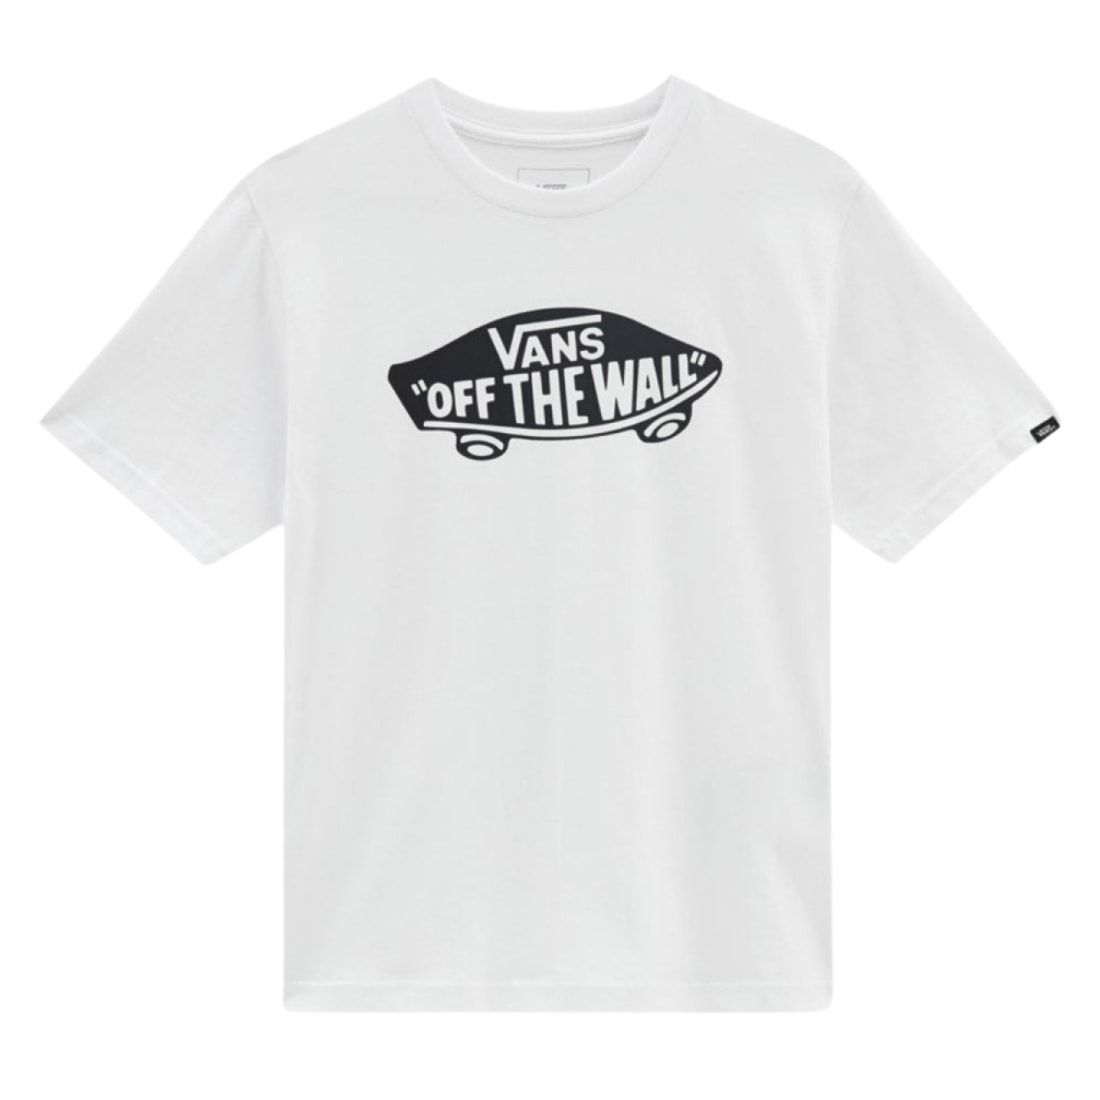 Vans Kids Style 76 T-Shirt - White/Black - Boys Skate Brand T-Shirt by Vans